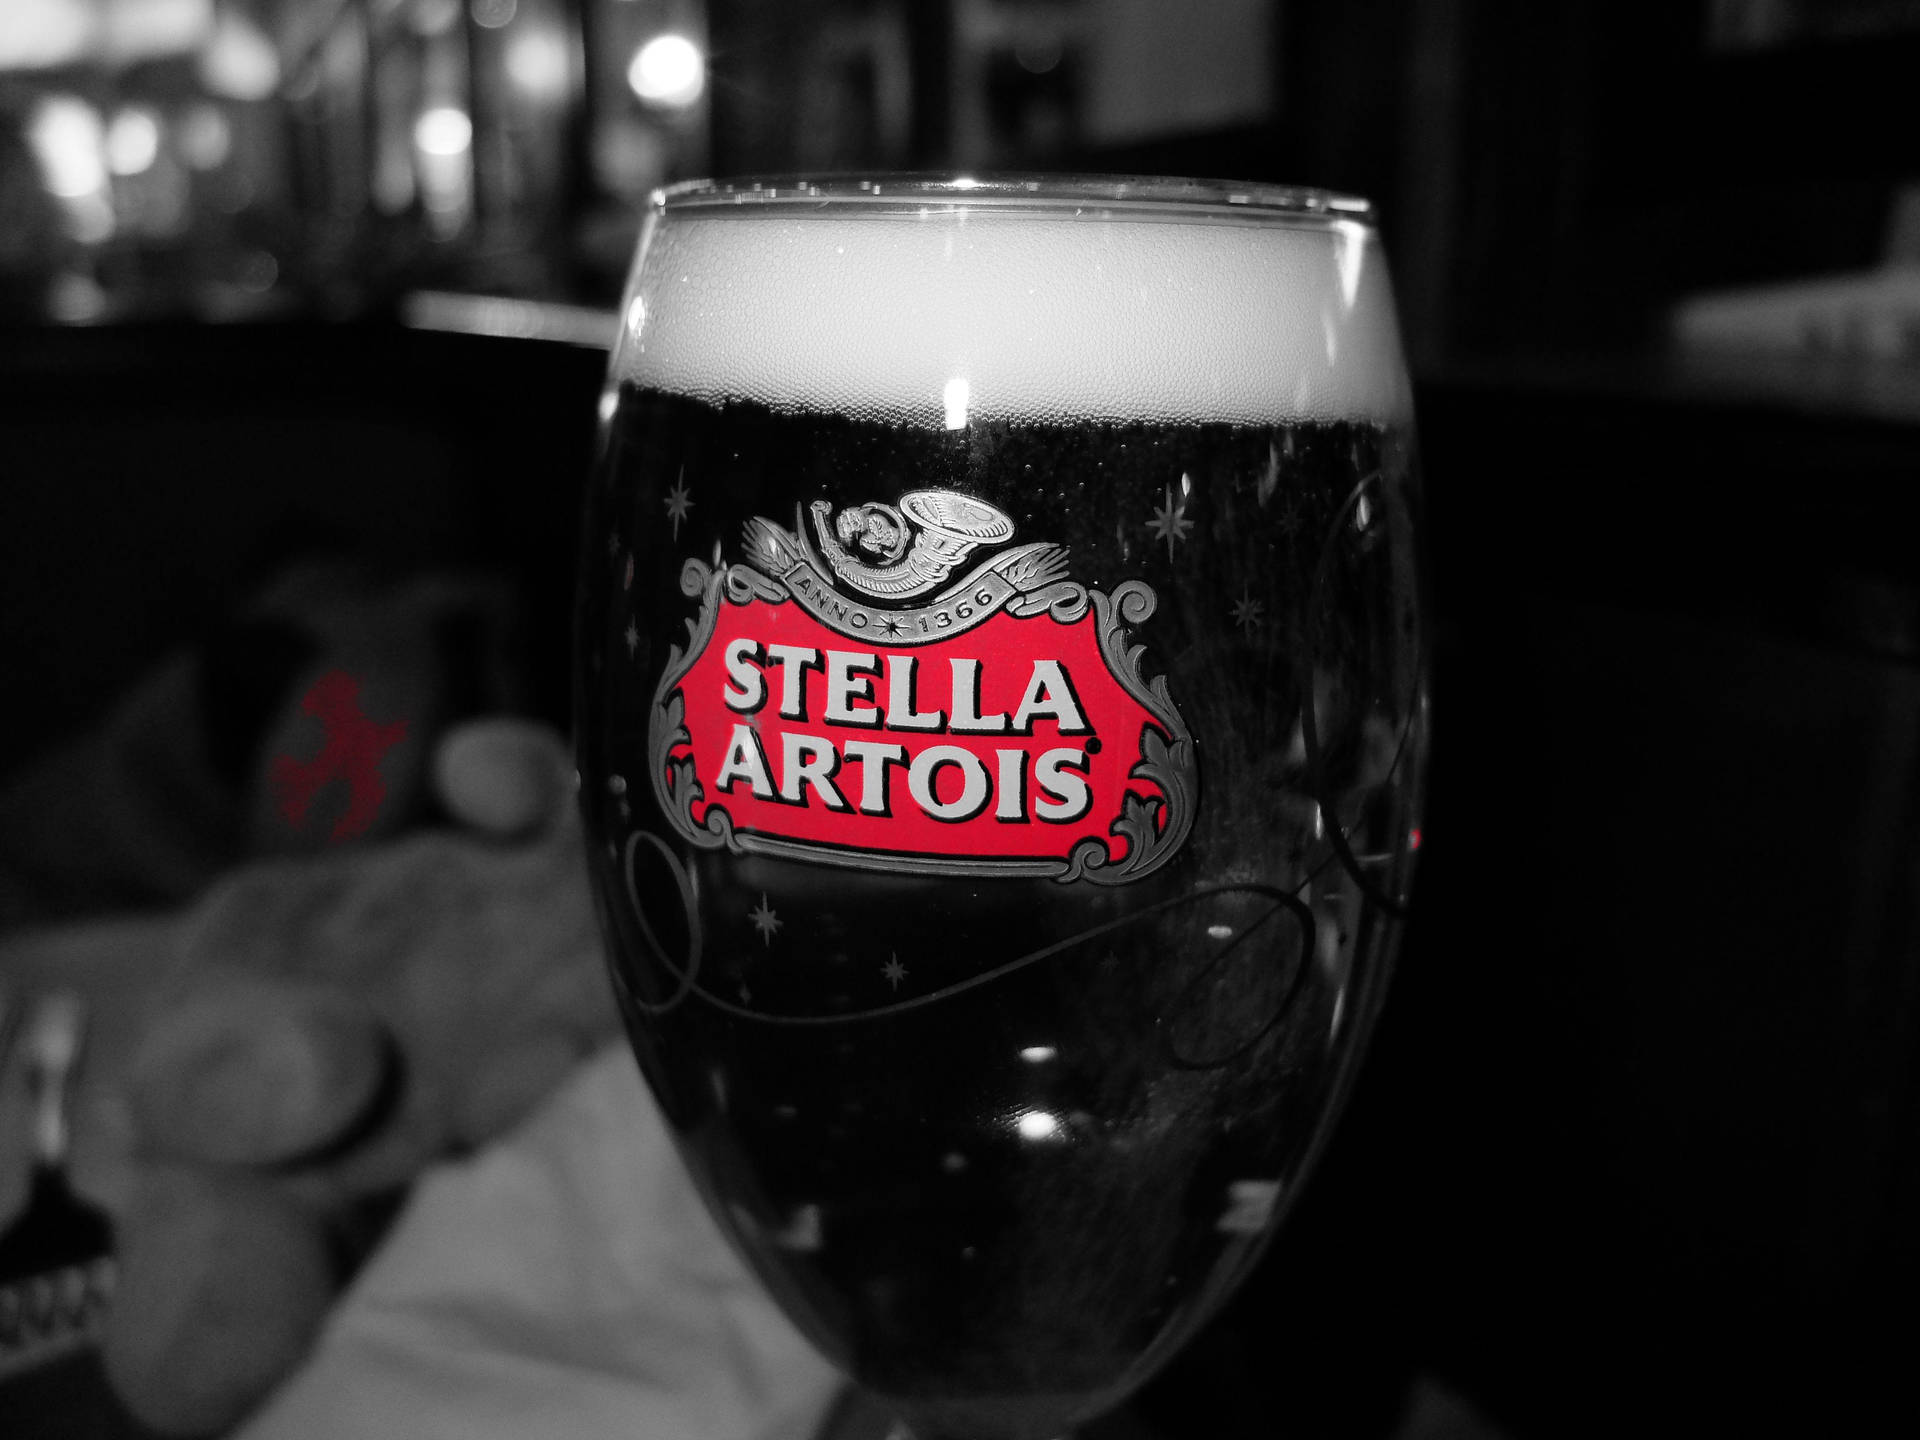 Vasolleno De Cerveza Stella Artois Fondo de pantalla